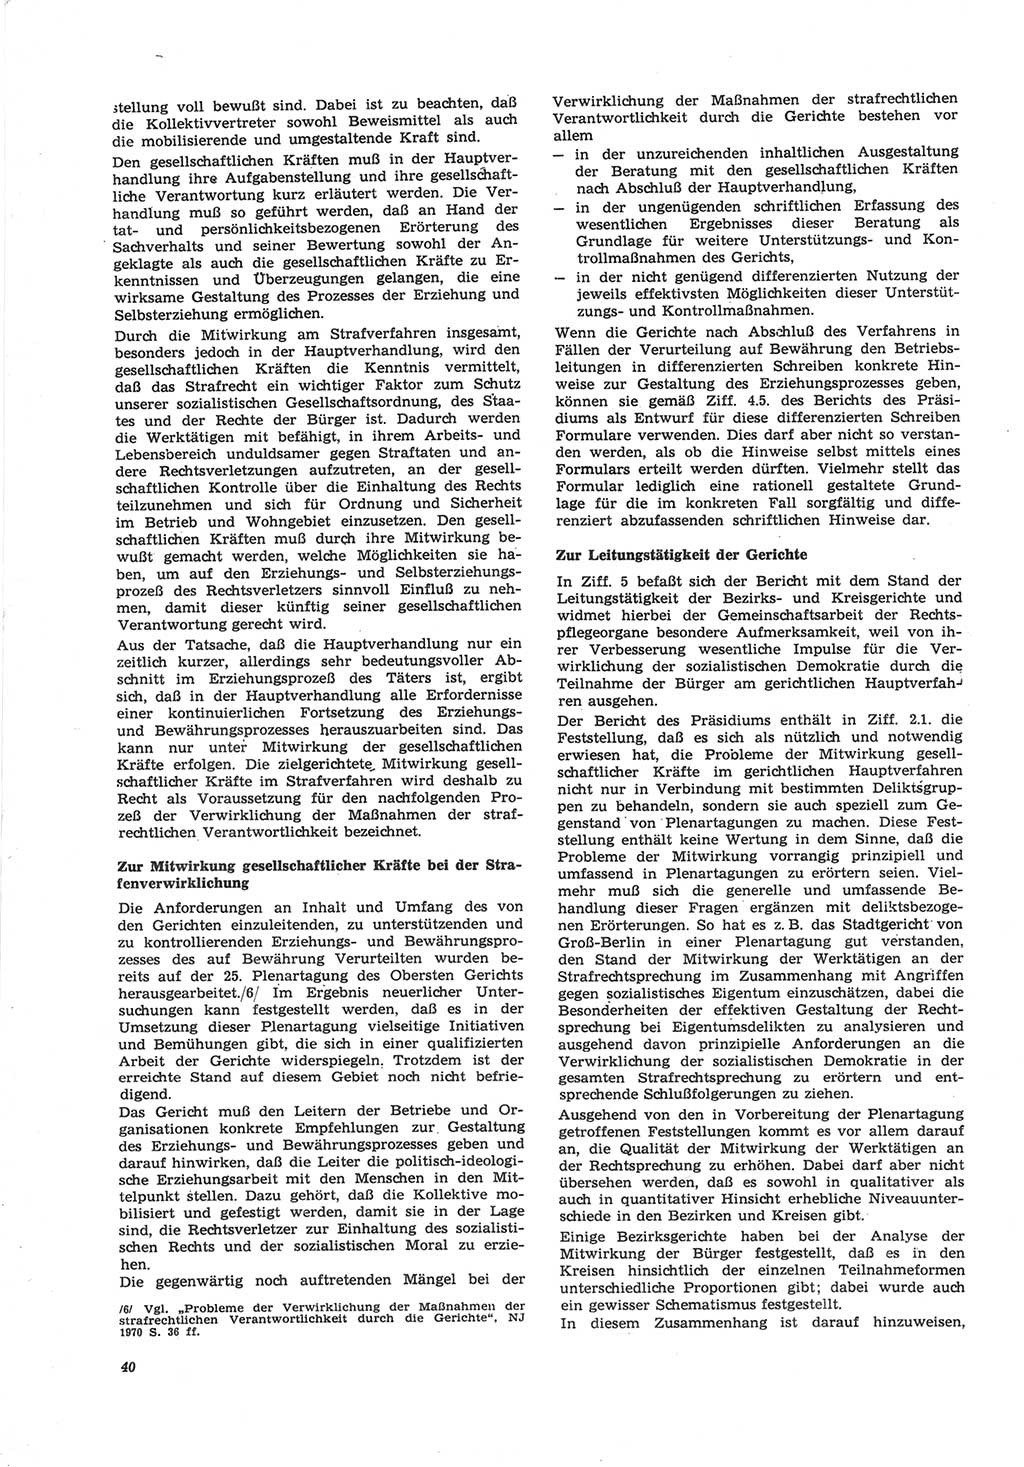 Neue Justiz (NJ), Zeitschrift für Recht und Rechtswissenschaft [Deutsche Demokratische Republik (DDR)], 25. Jahrgang 1971, Seite 40 (NJ DDR 1971, S. 40)